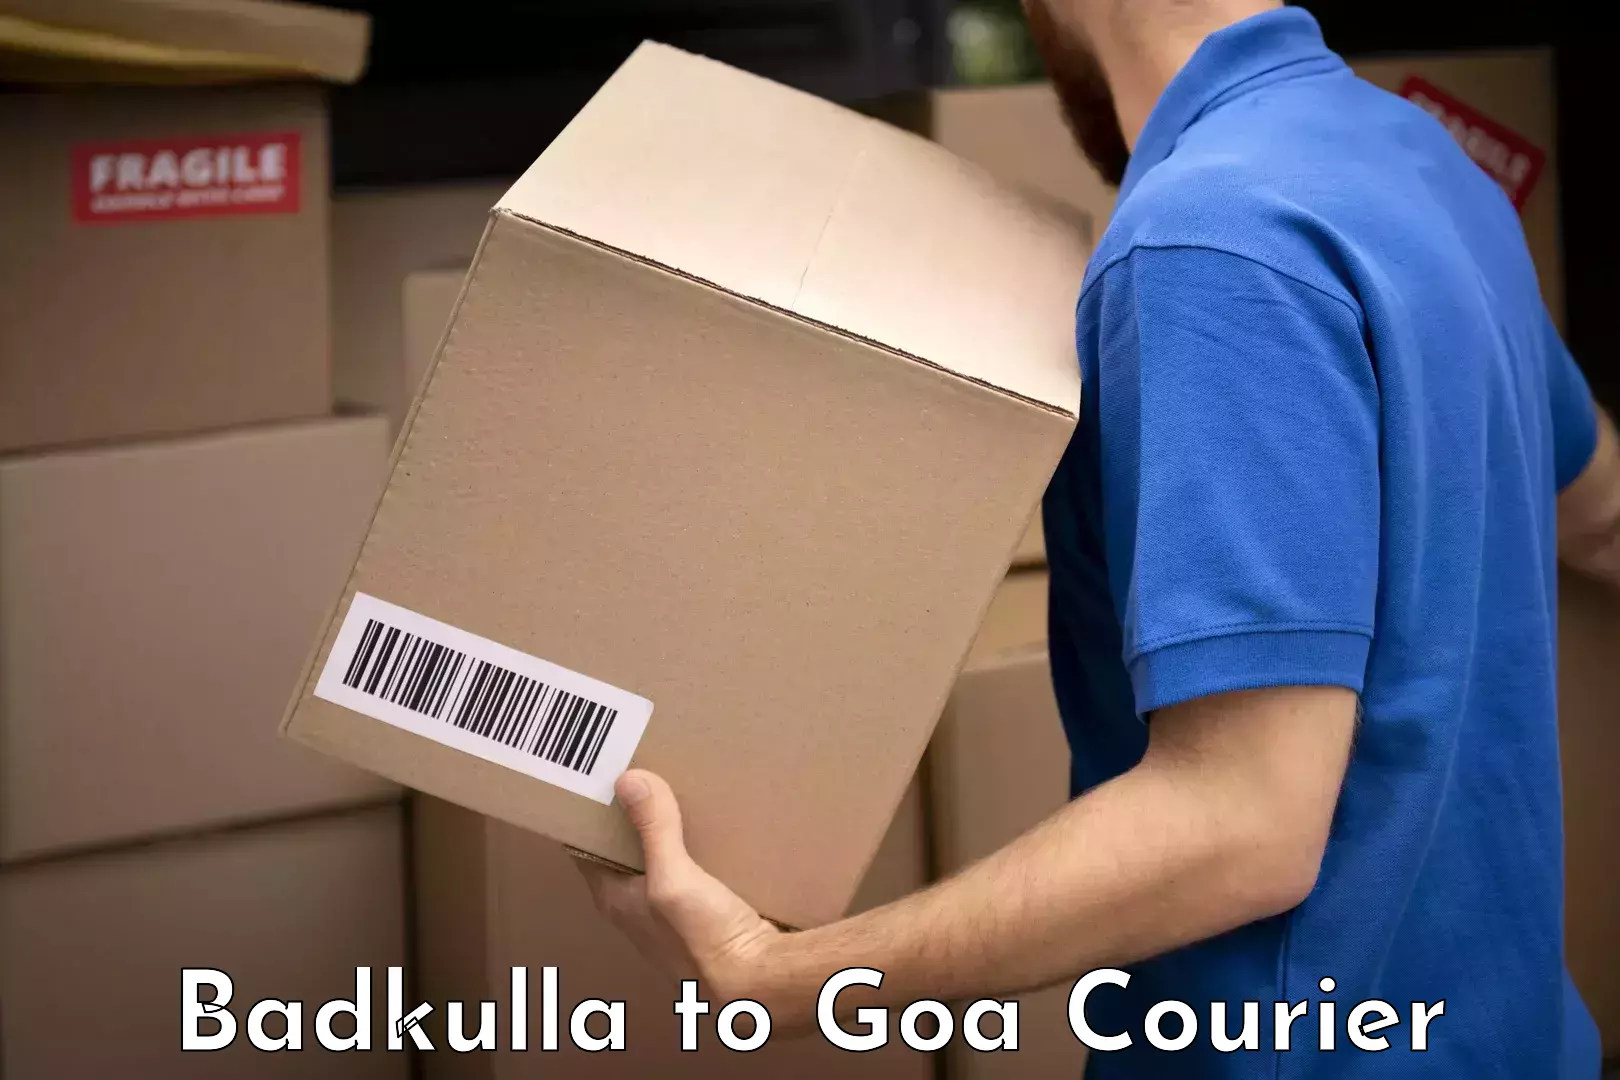 Baggage transport scheduler Badkulla to Goa